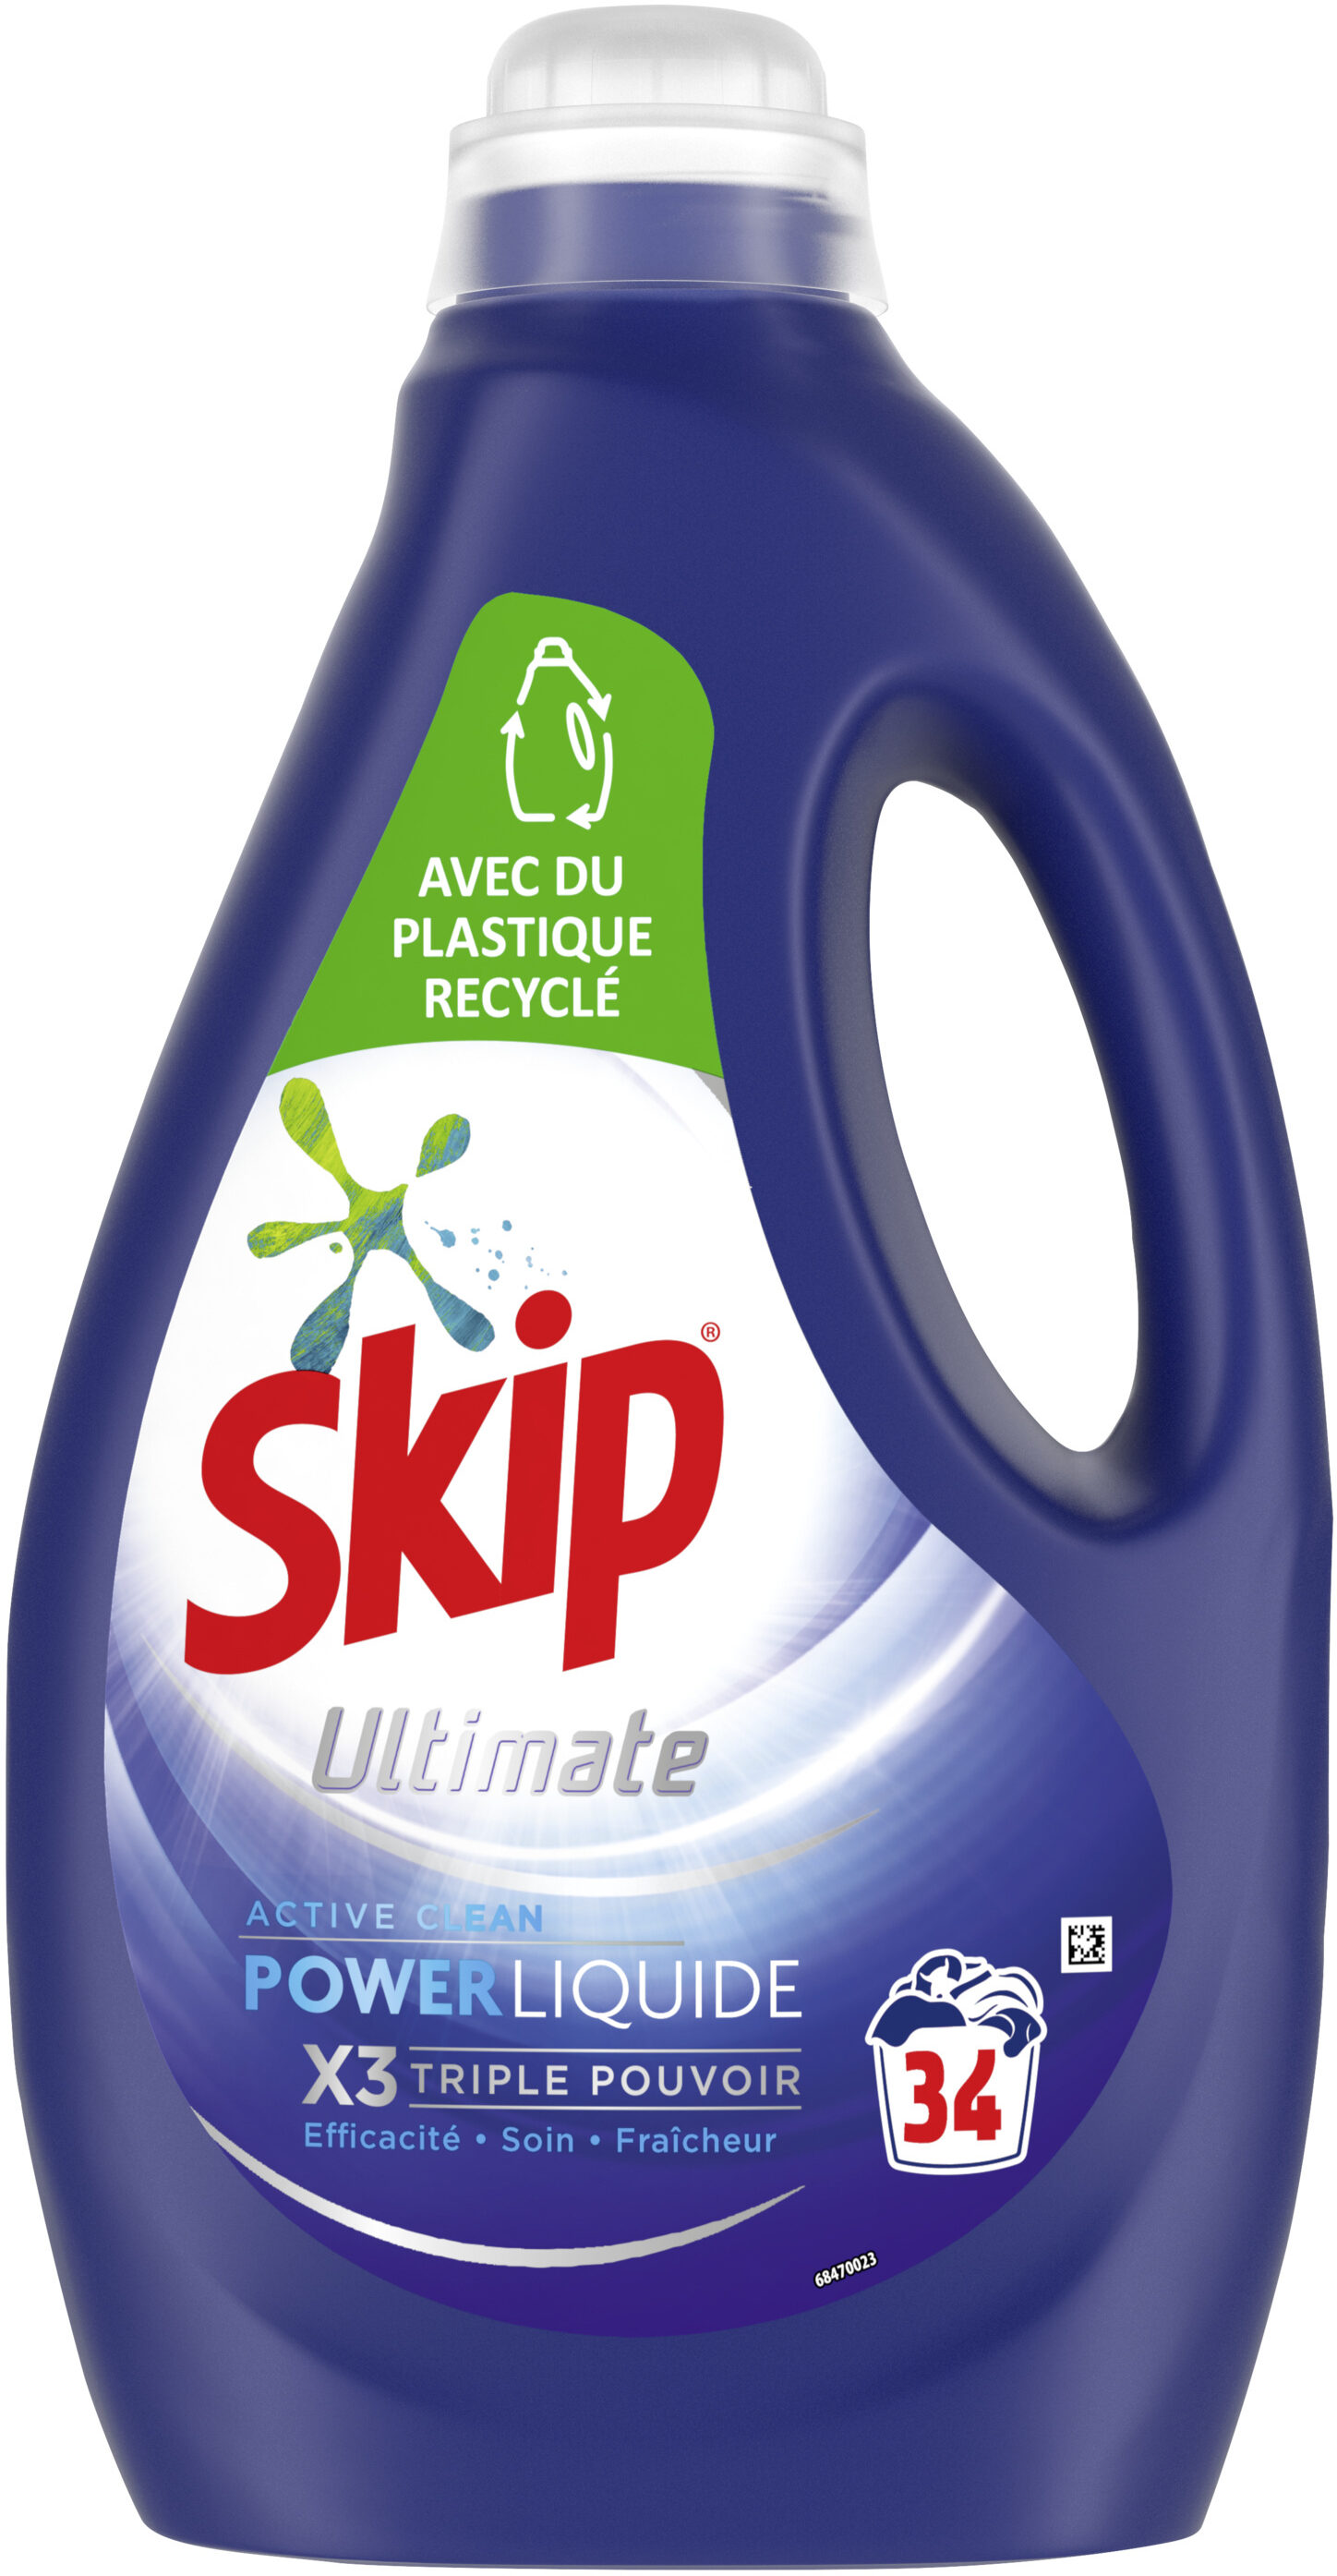 SKIP Lessive Liquide Ultimate Active Clean 1,7l - 34 Lavages - Produit - fr